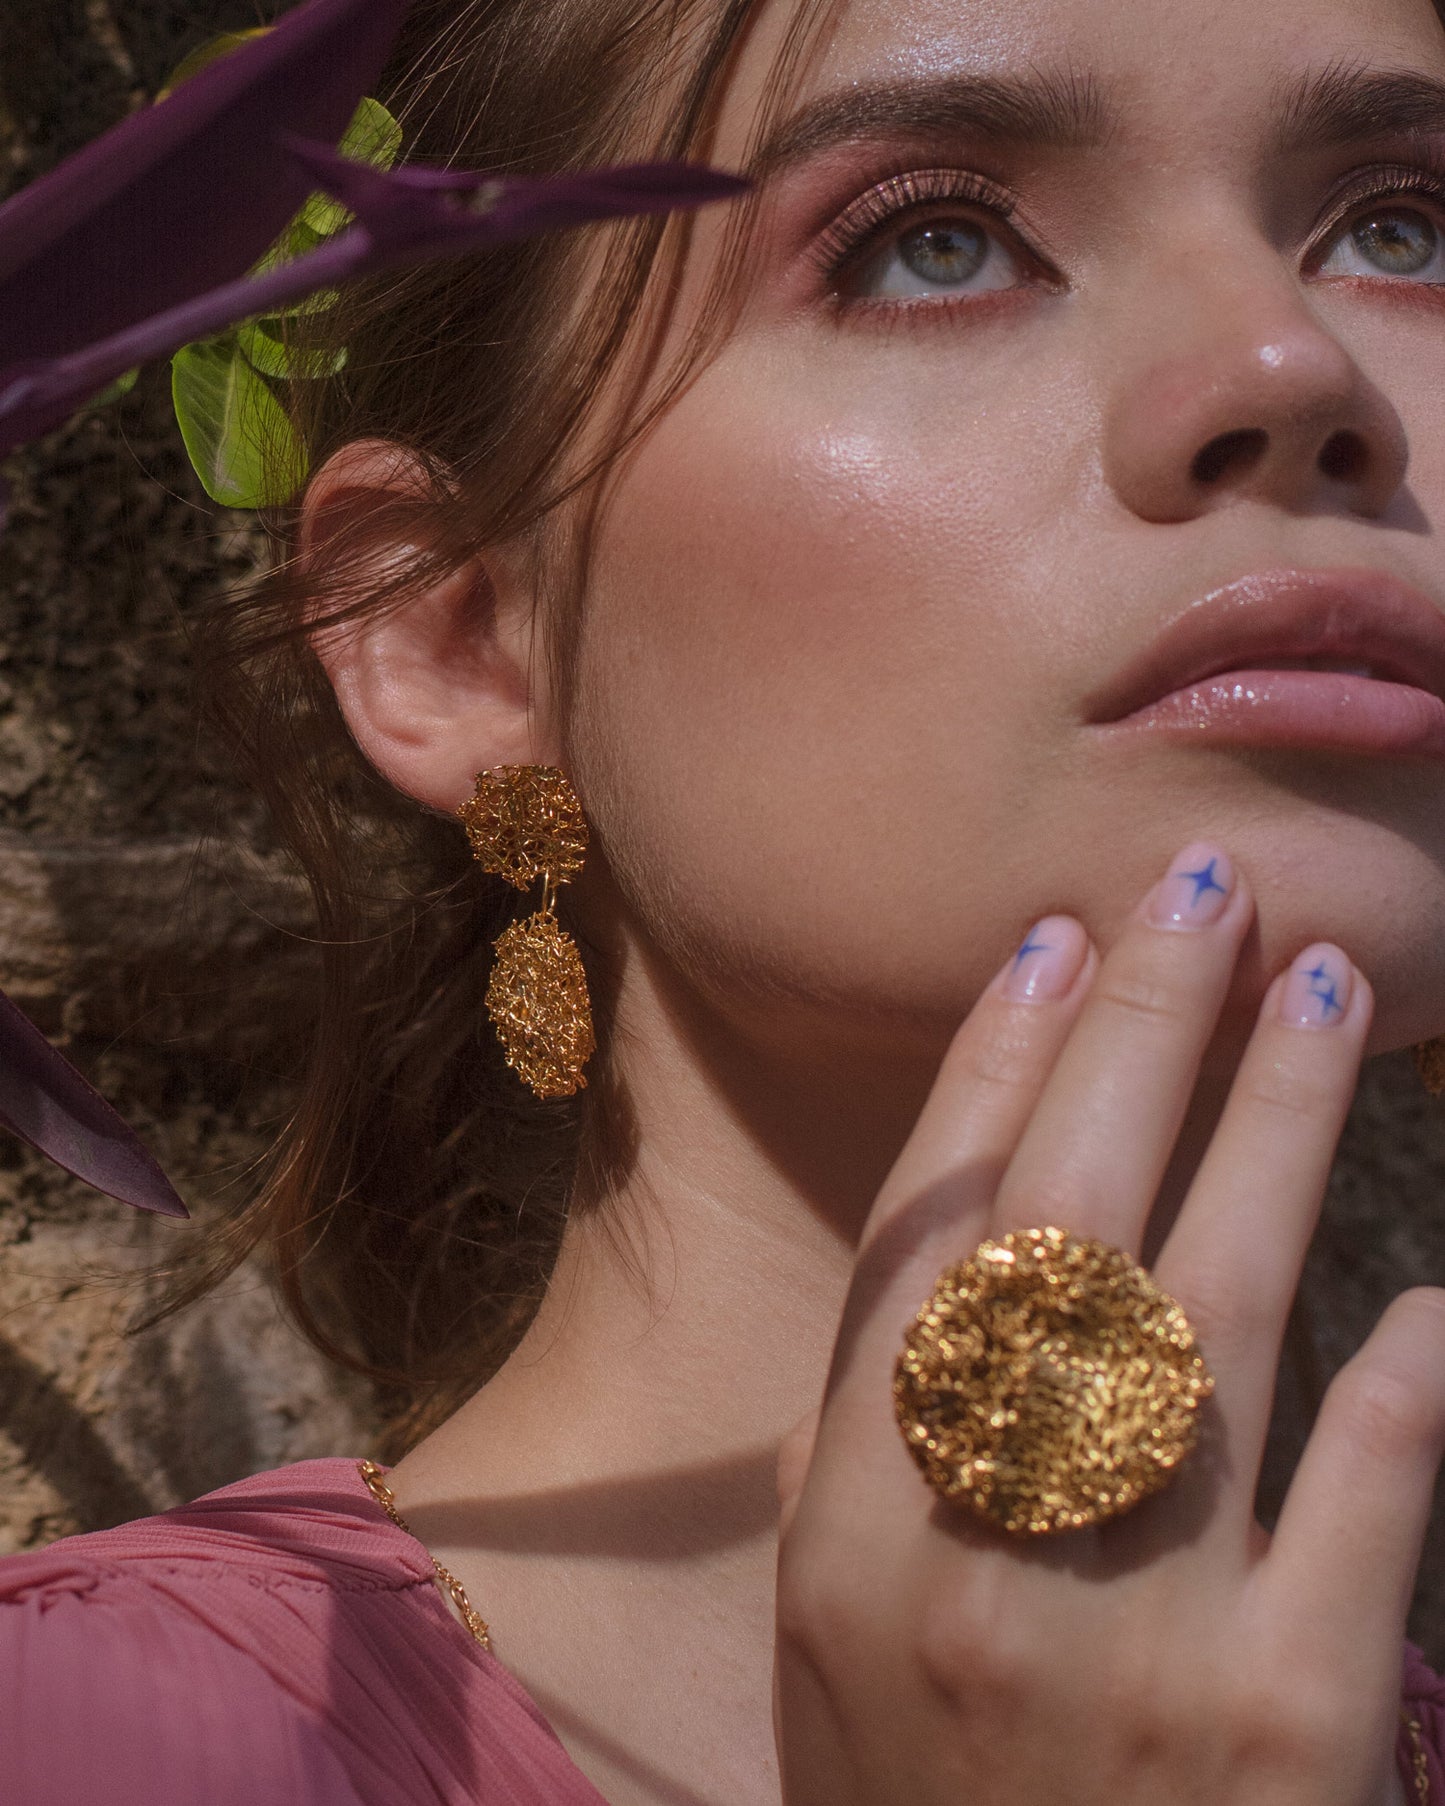 Aretes artesanales de luffa con Esmeraldas colombianas bañado en oro de 24 kilates Joyería de lujo sostenible